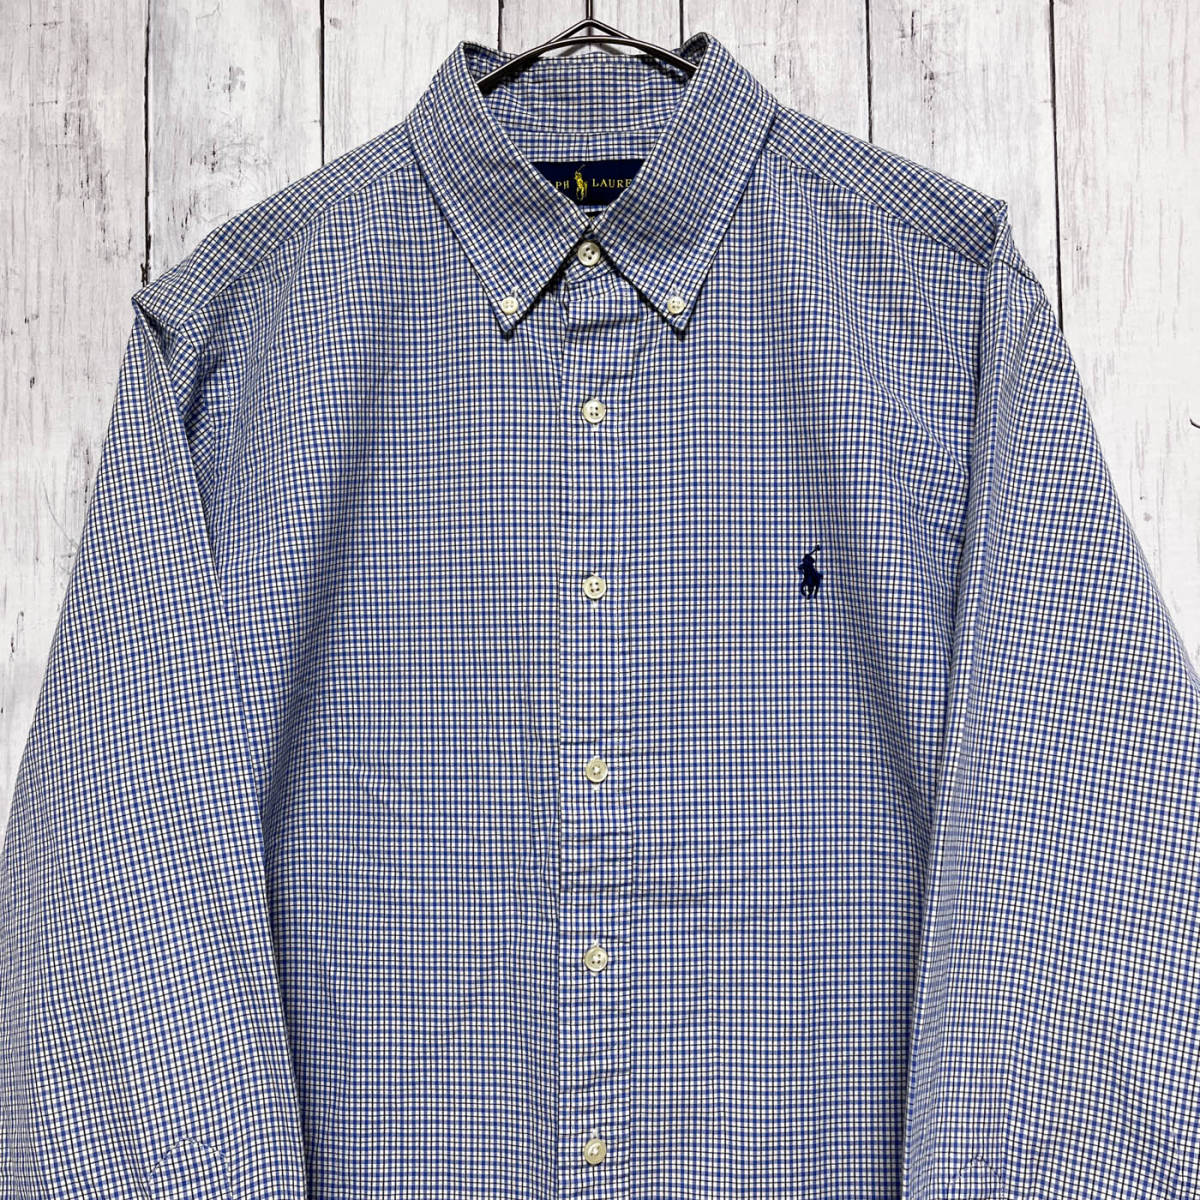 ラルフローレン Ralph Lauren CLASSIC FIT チェックシャツ 長袖シャツ メンズ ワンポイント コットン100% サイズ16 Lサイズ 5‐308_画像1